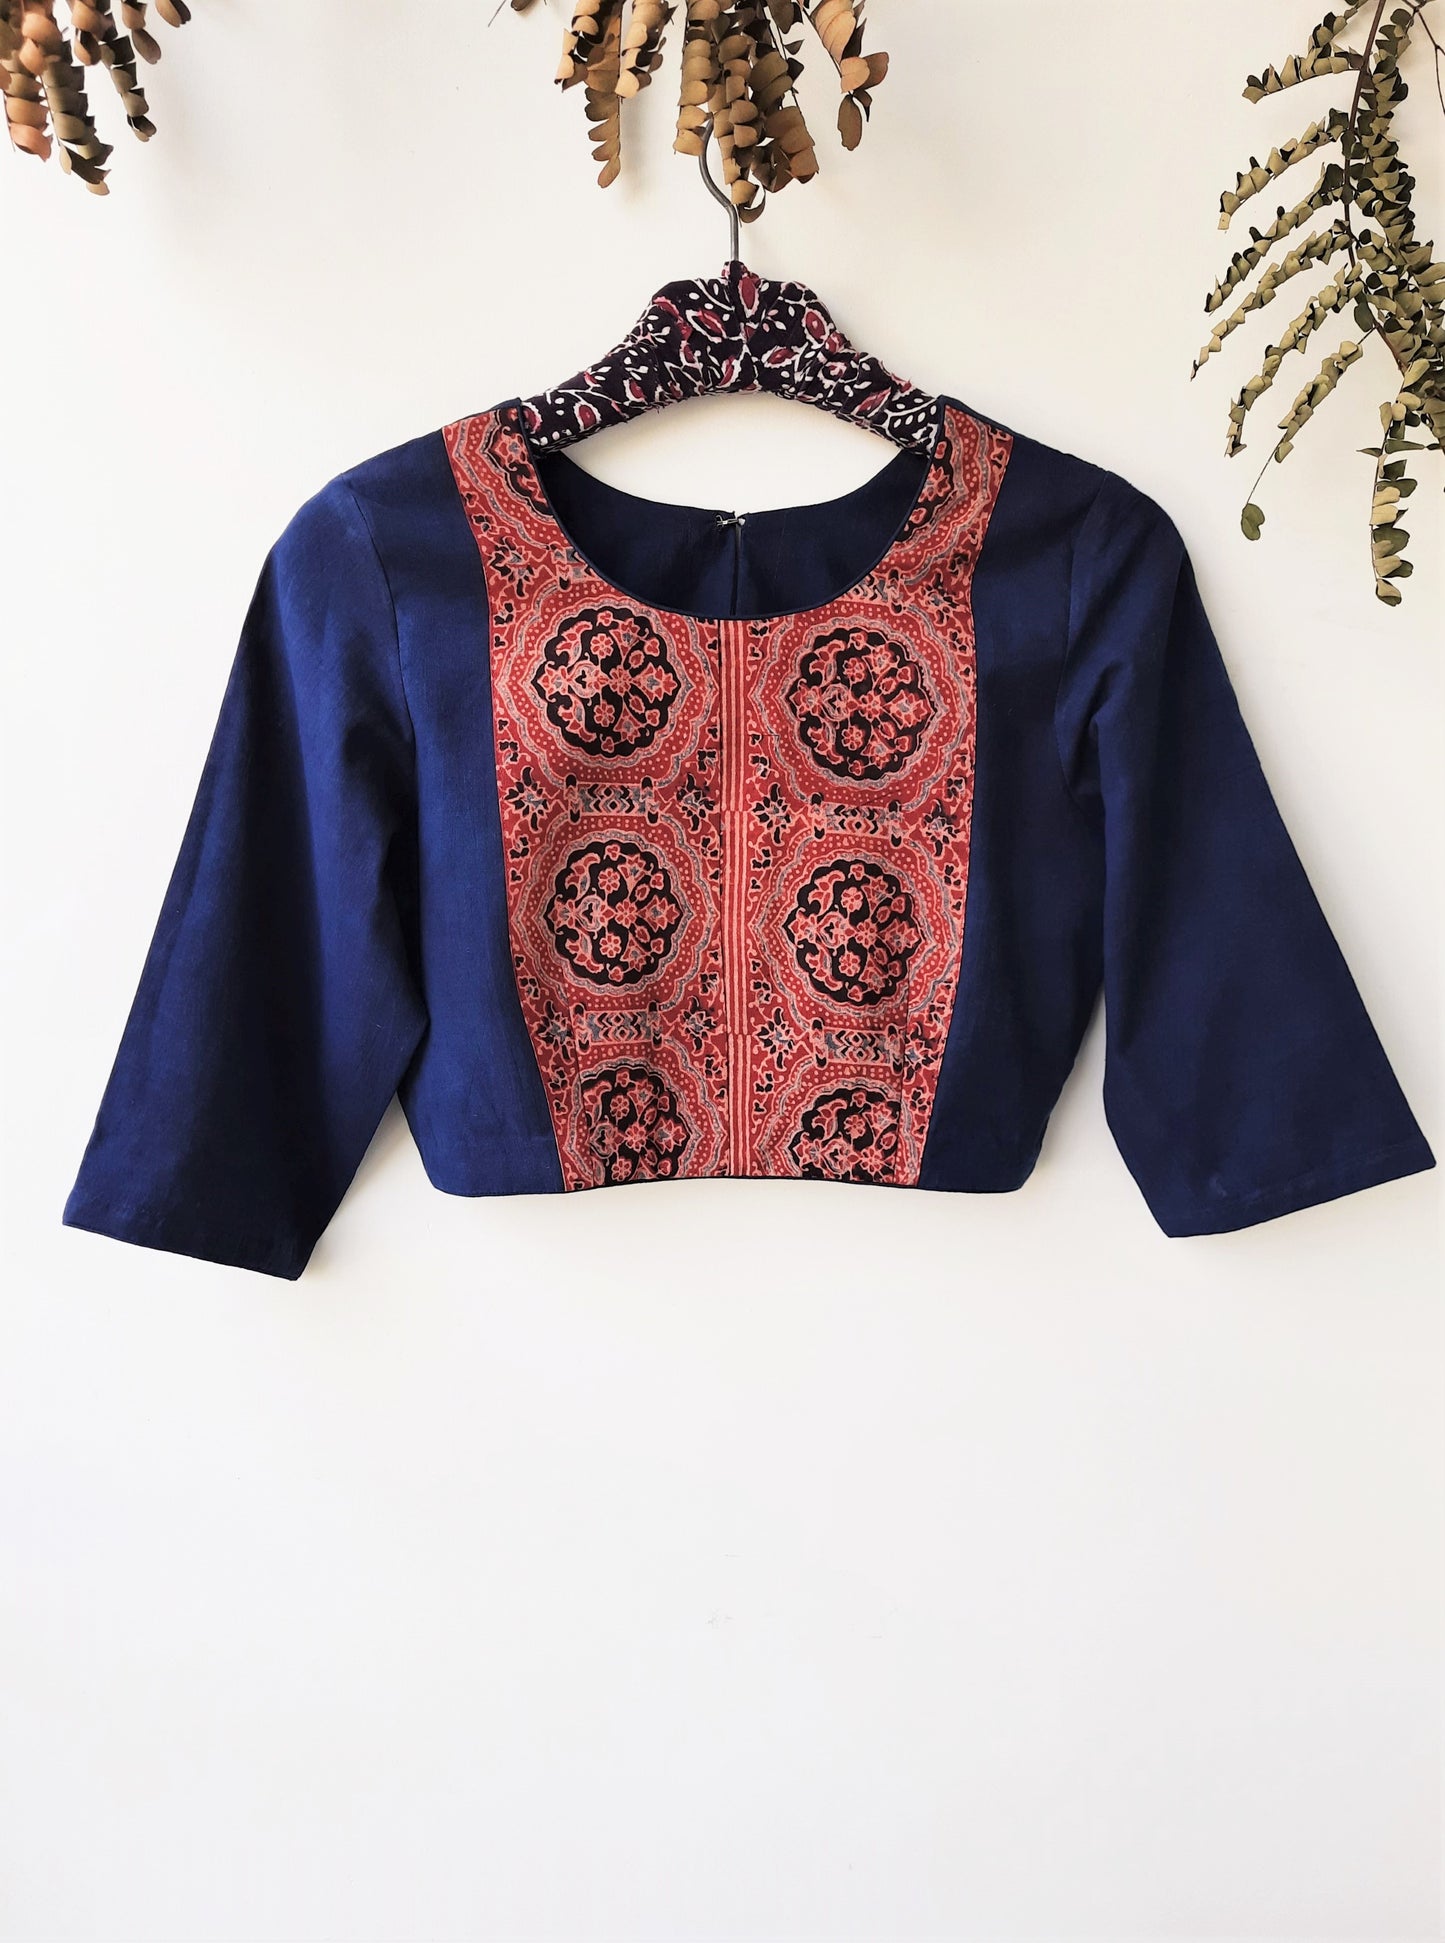 Indigo ajrakh blouse, indigo dyed saree blouse, handmade ajrakh blouse in indigo